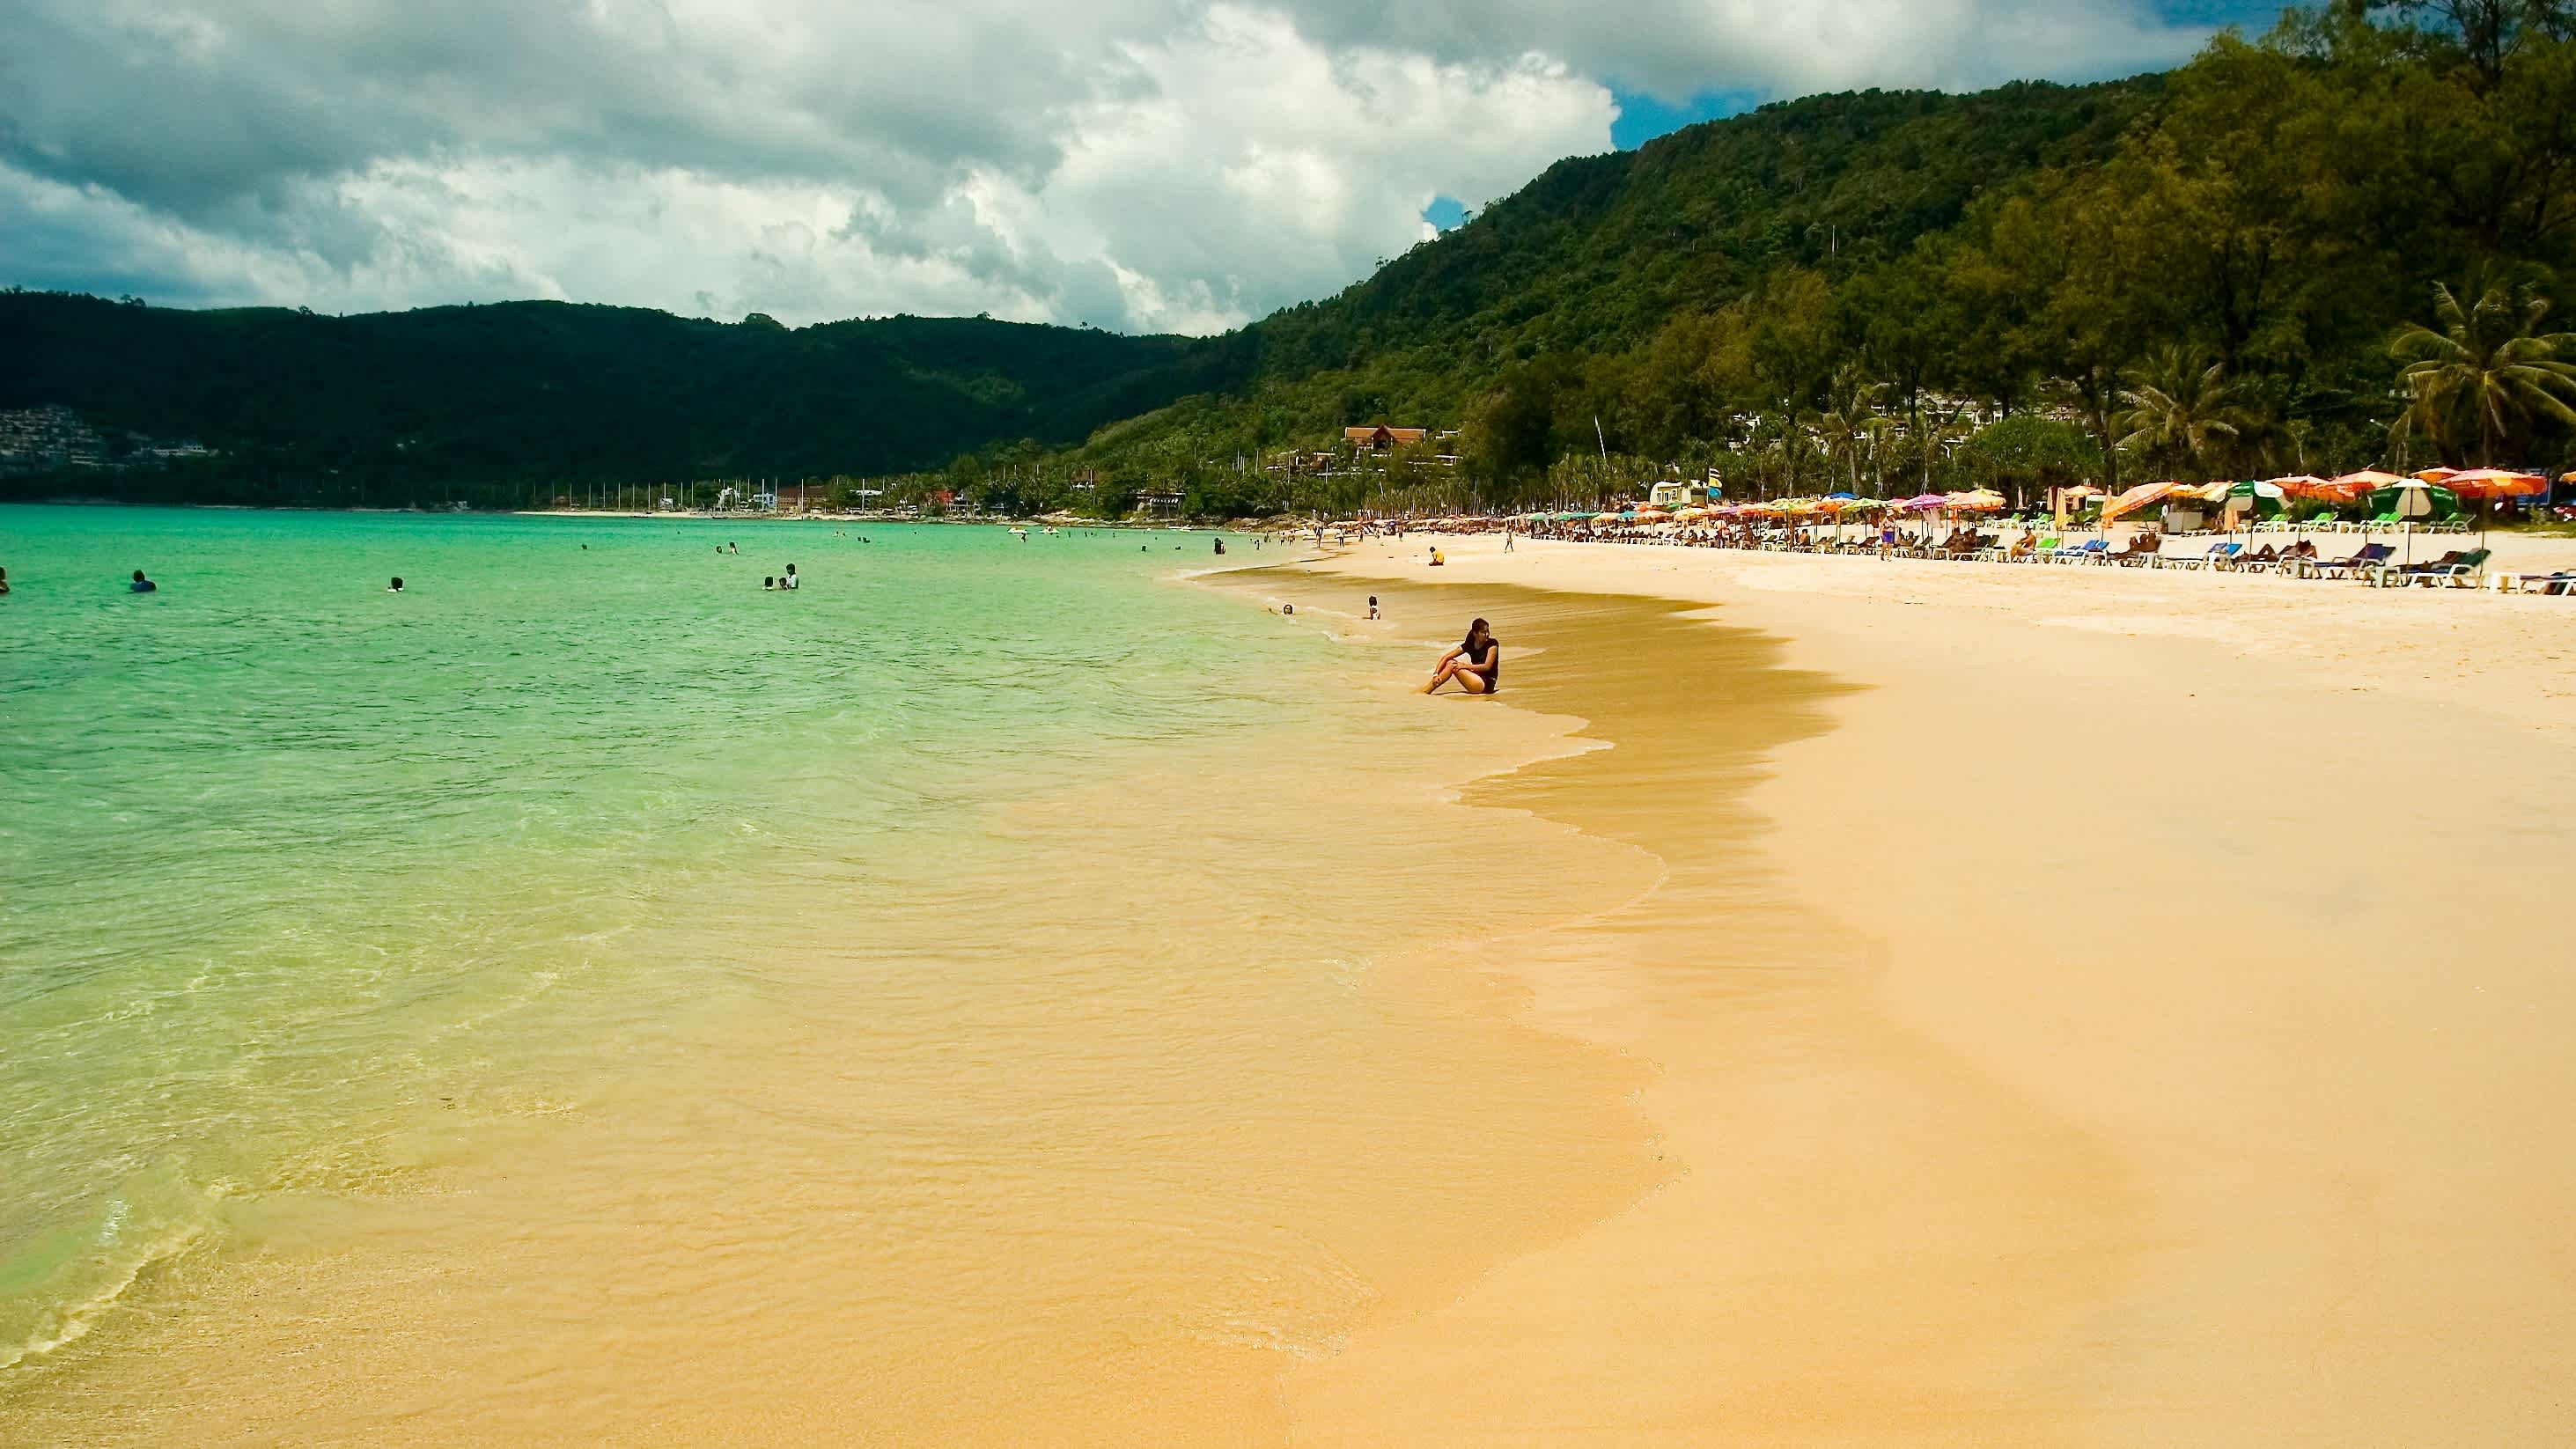 Der Patong Beach auf Phuket, Thailand, mit goldgelbem Sand, seichtem, türkisblauem Meer und bunten Sonnernschirmen im Hintergrund.